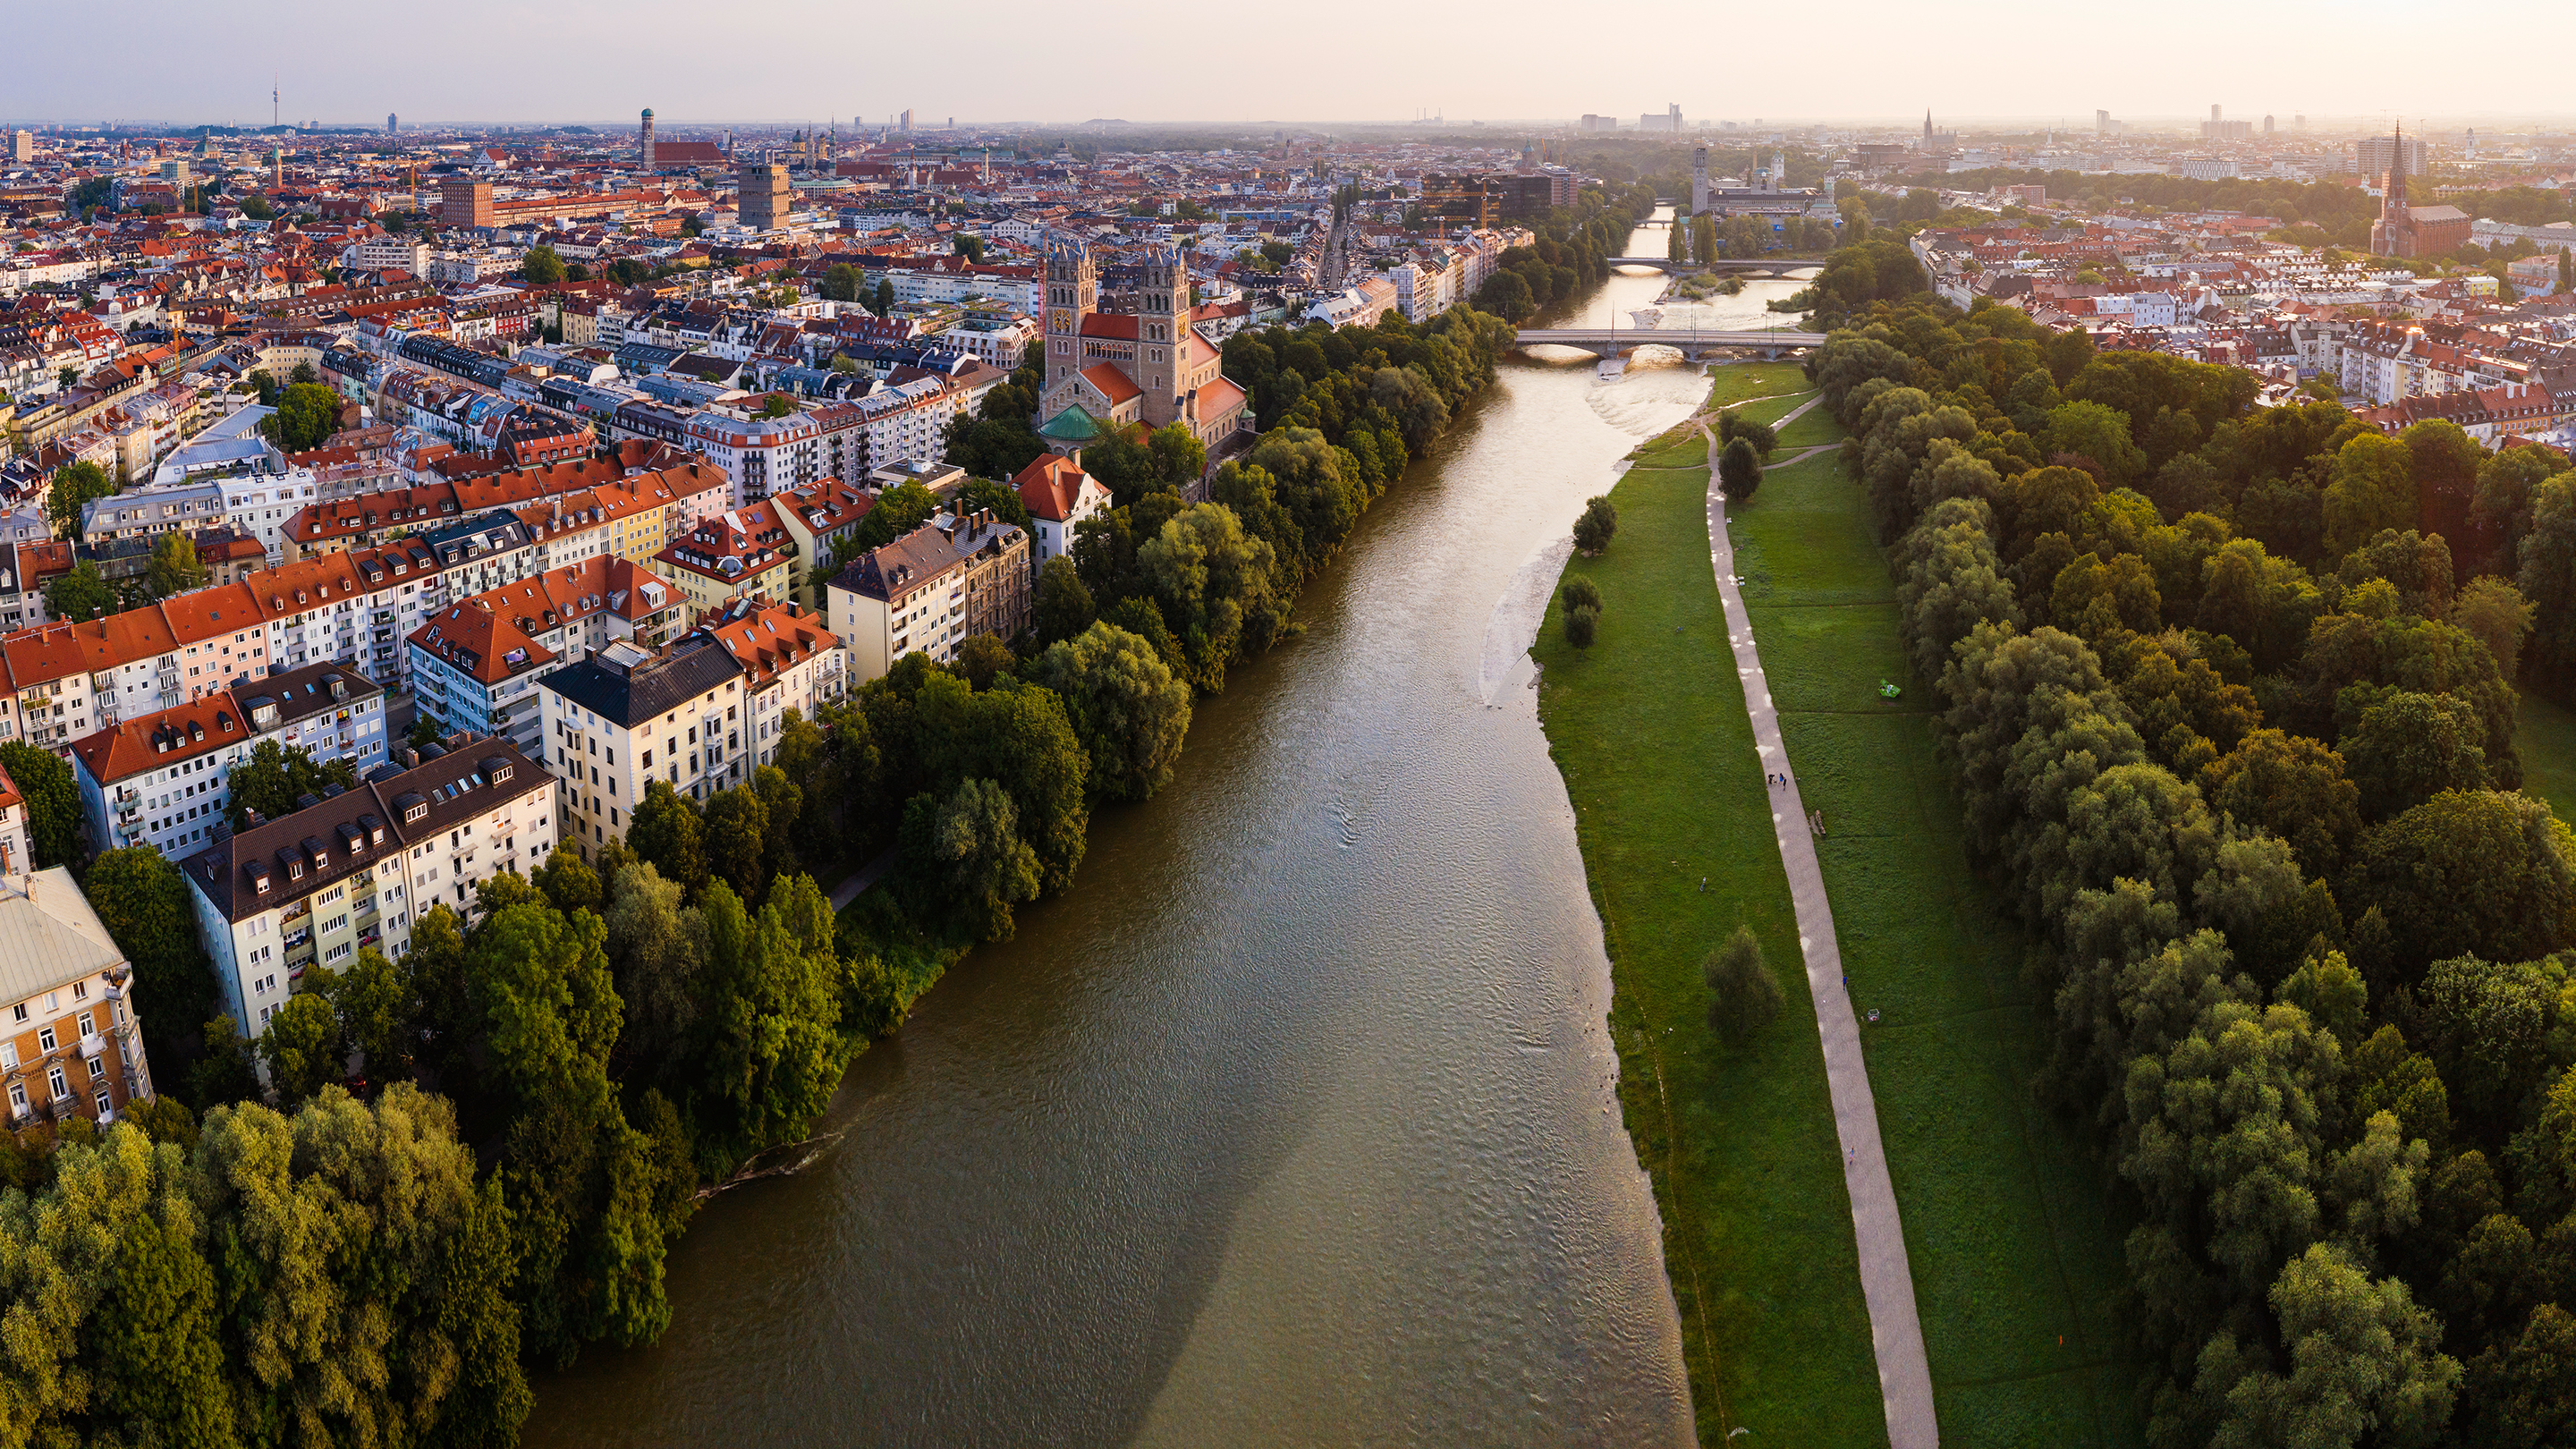 Luftaufnahme von München mit einem Fluß in der Mitte und einem Weg entlang des Flußlaufes.